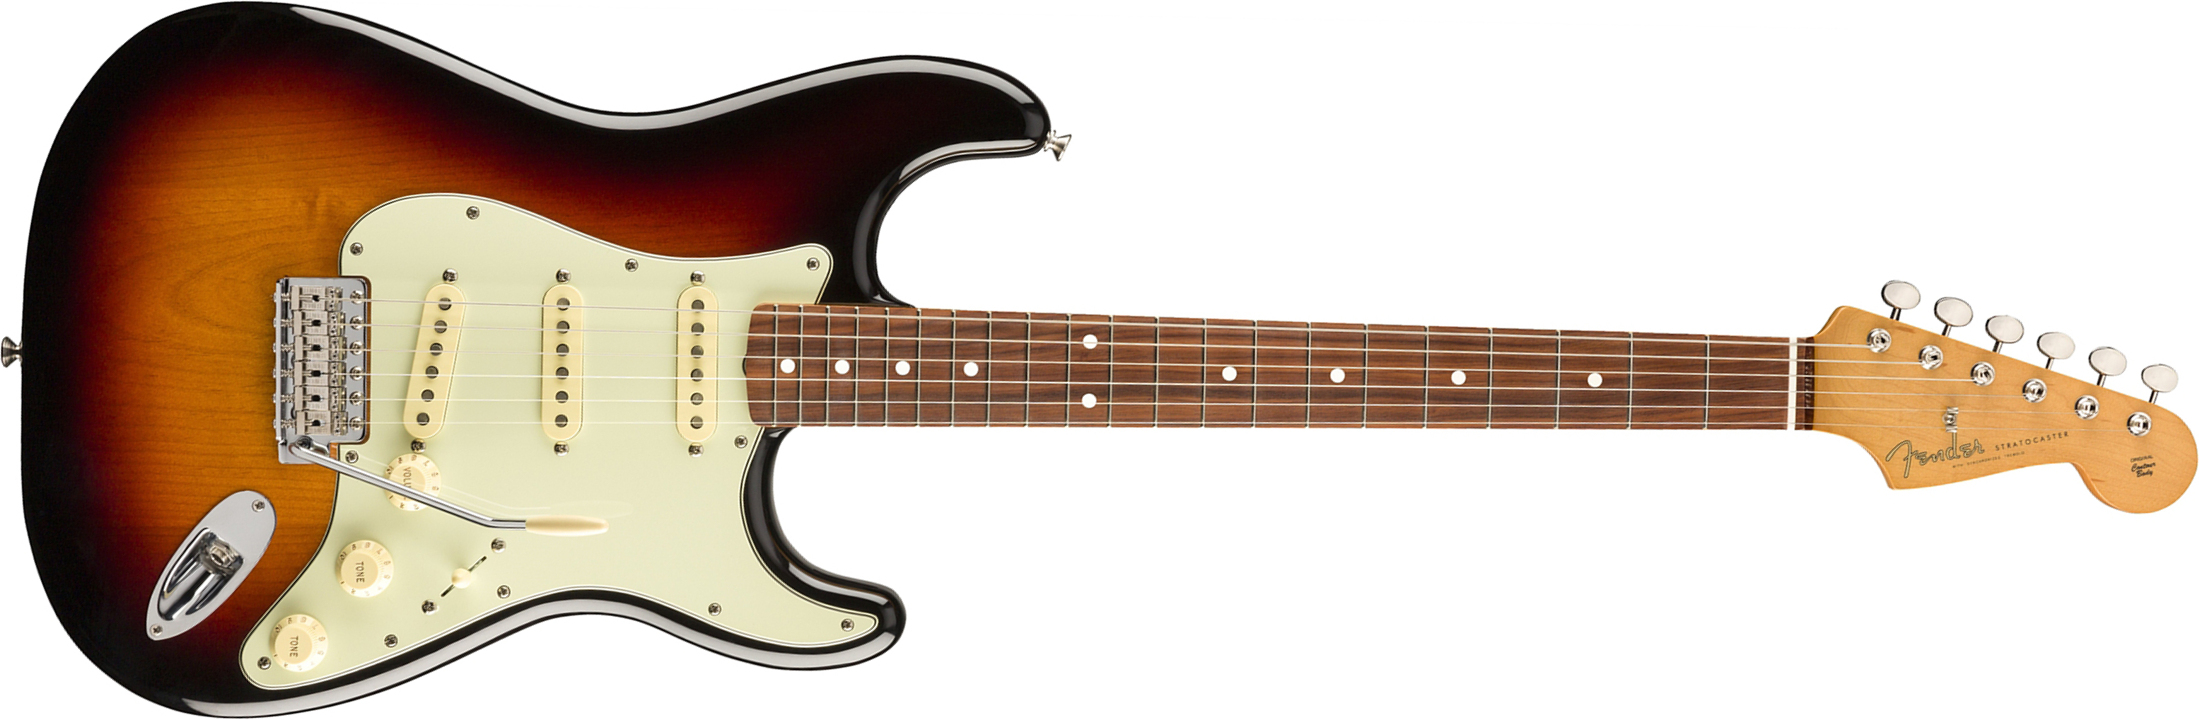 Fender Strat 60s Vintera Vintage Mex Pf - 3-color Sunburst - Str shape electric guitar - Main picture